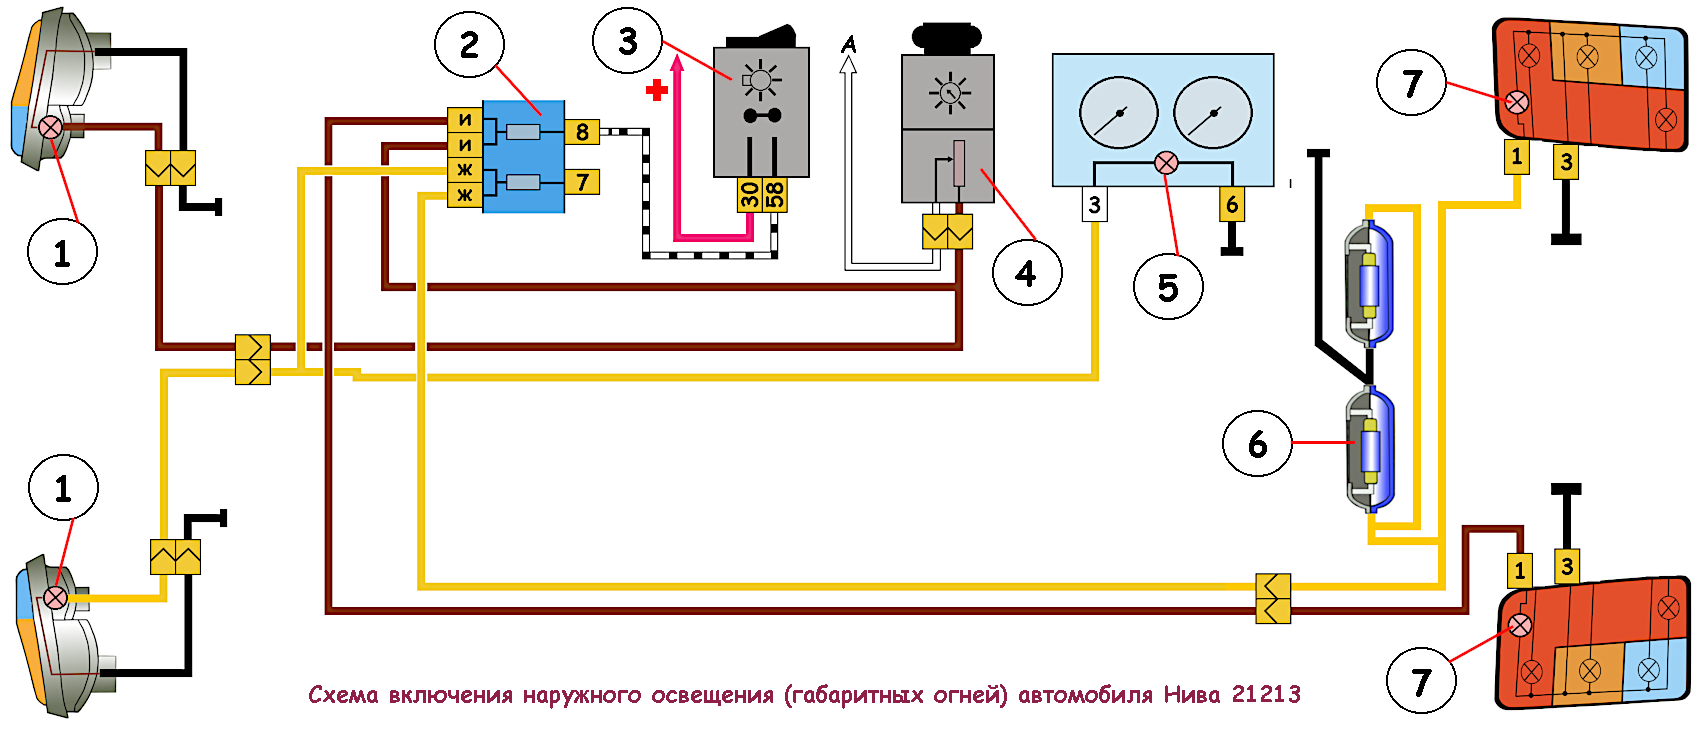 Обслуживание проводки ваз 21214 и других моделей нивы инжектор и карбюратор: электрическая схема